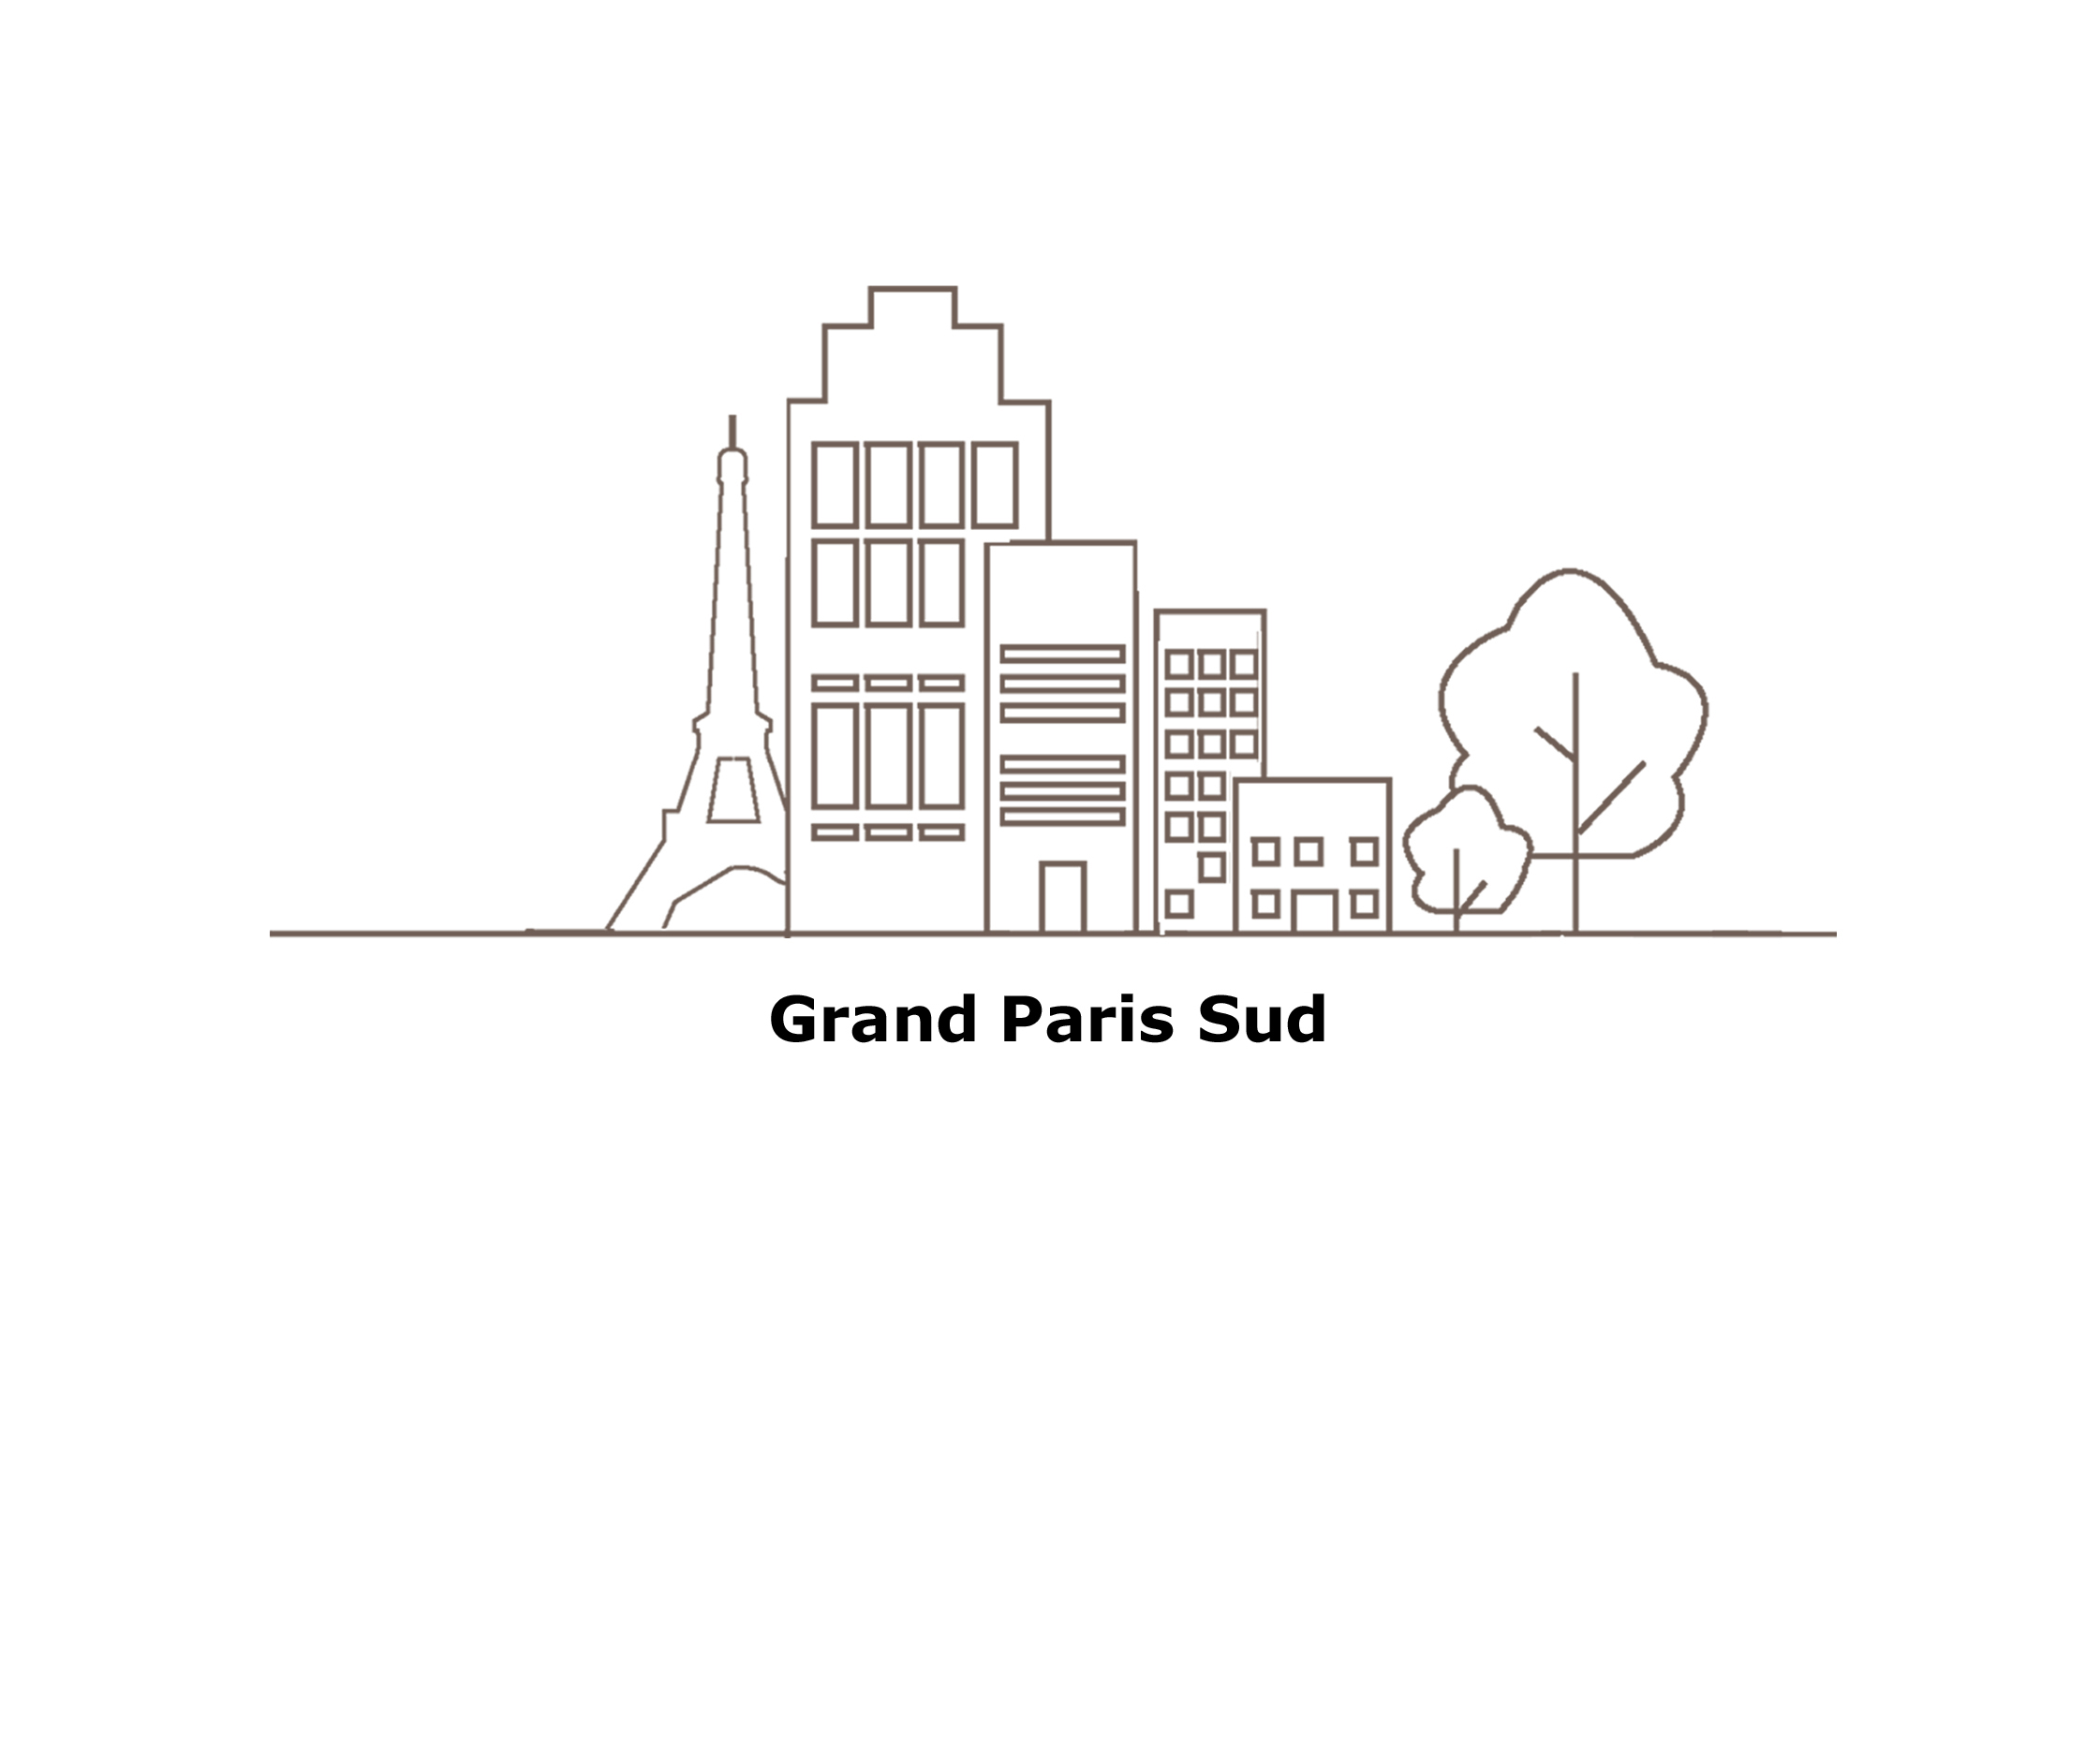 GRAND PARIS SUD